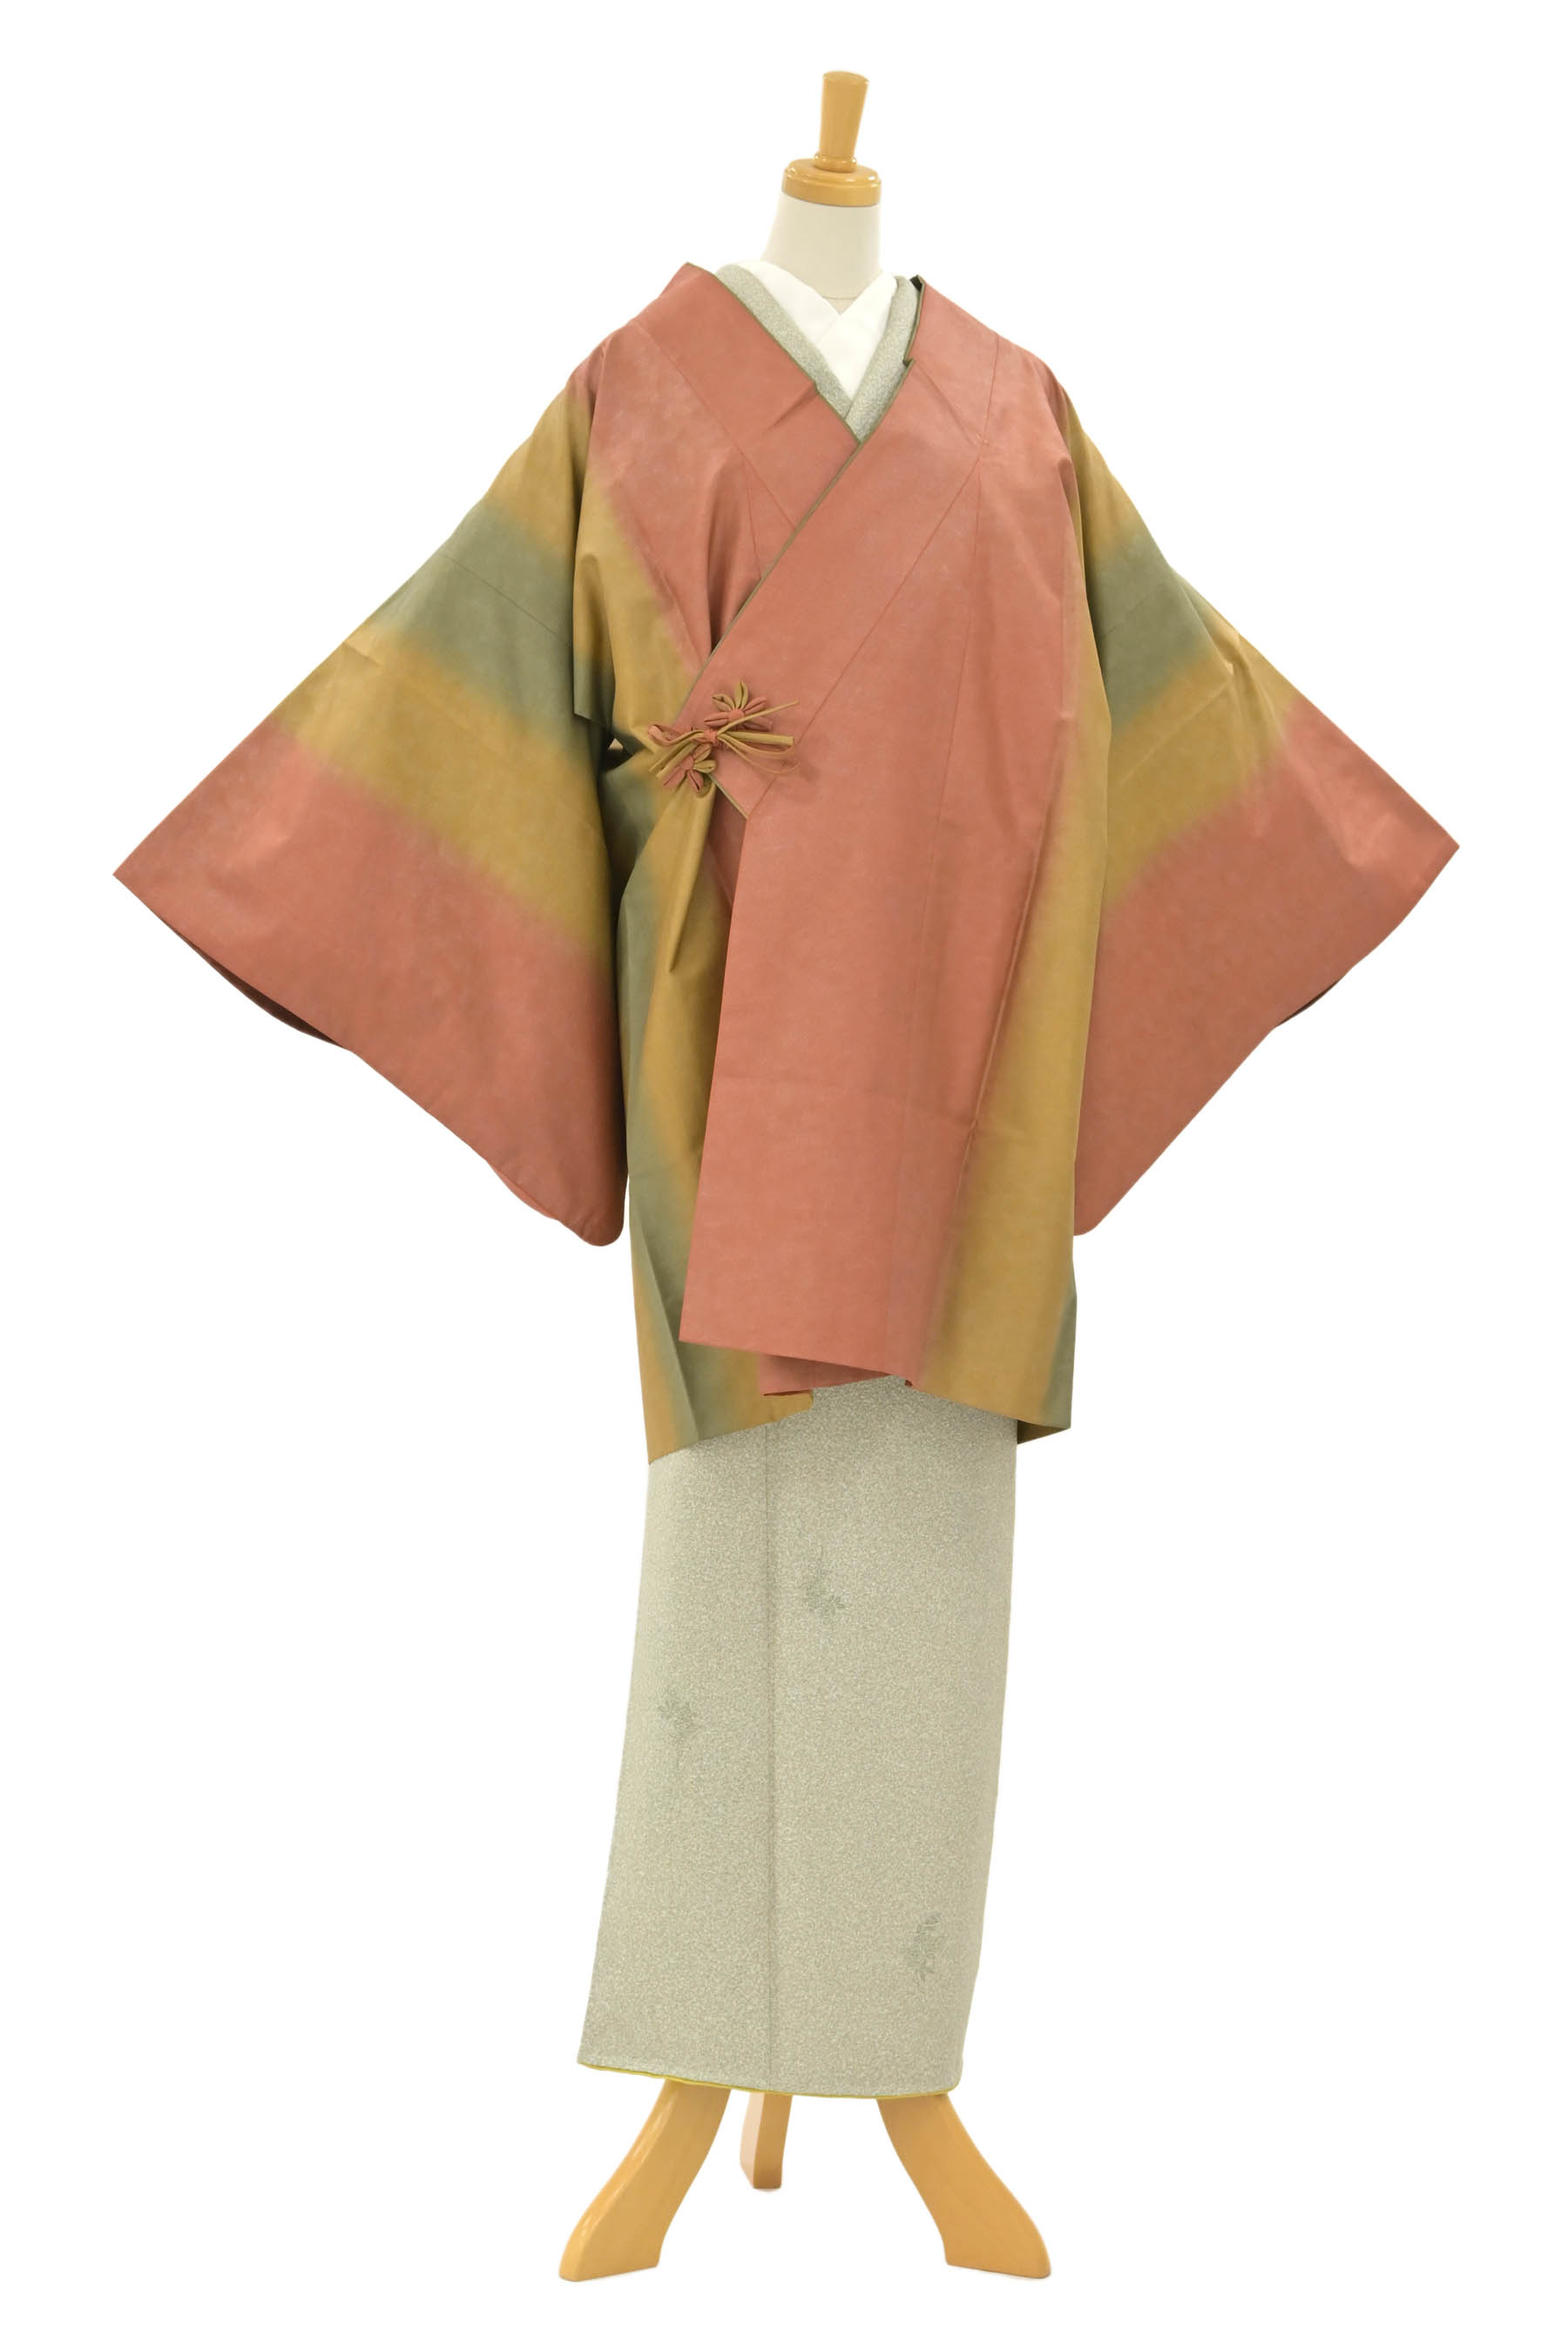 西陣紬をお探しなら京都きもの市場【日本最大級の着物通販サイト】